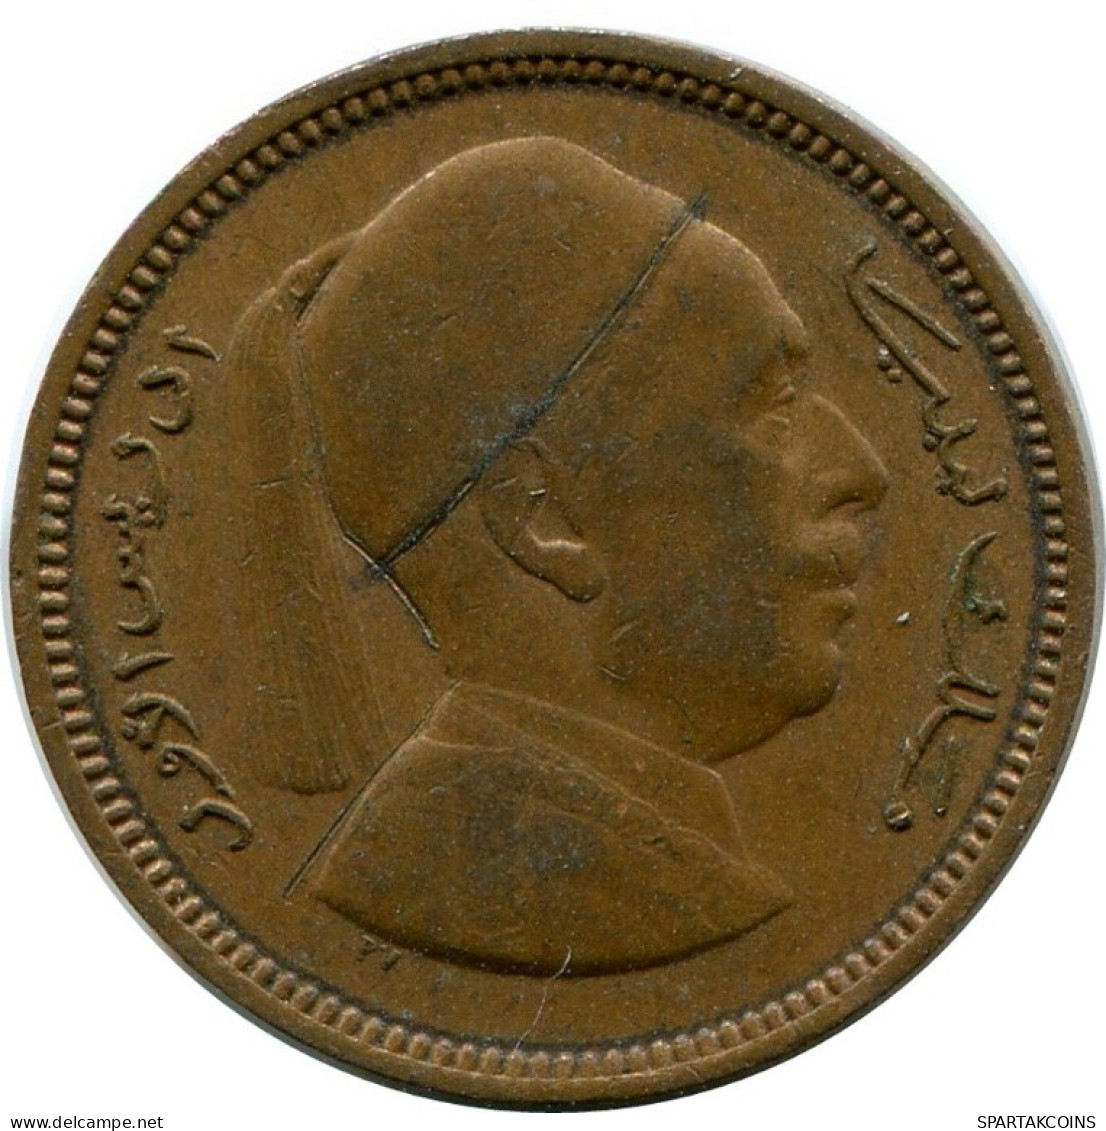 1 MILLIEME 1952 LIBYA Coin #AK328.U.A - Libye